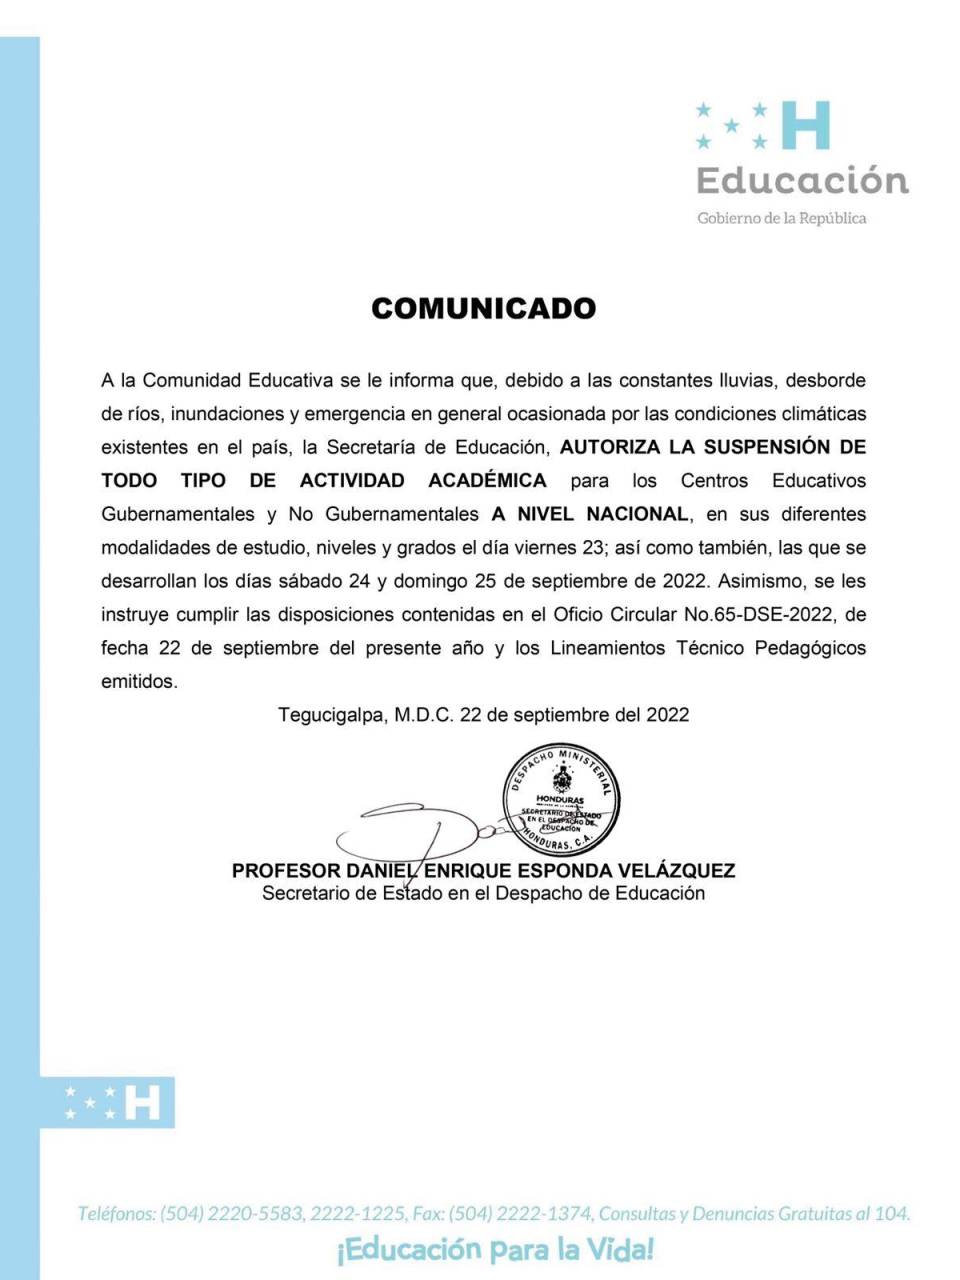 Educación suspendió las actividades académicas en los 298 municipios del país.